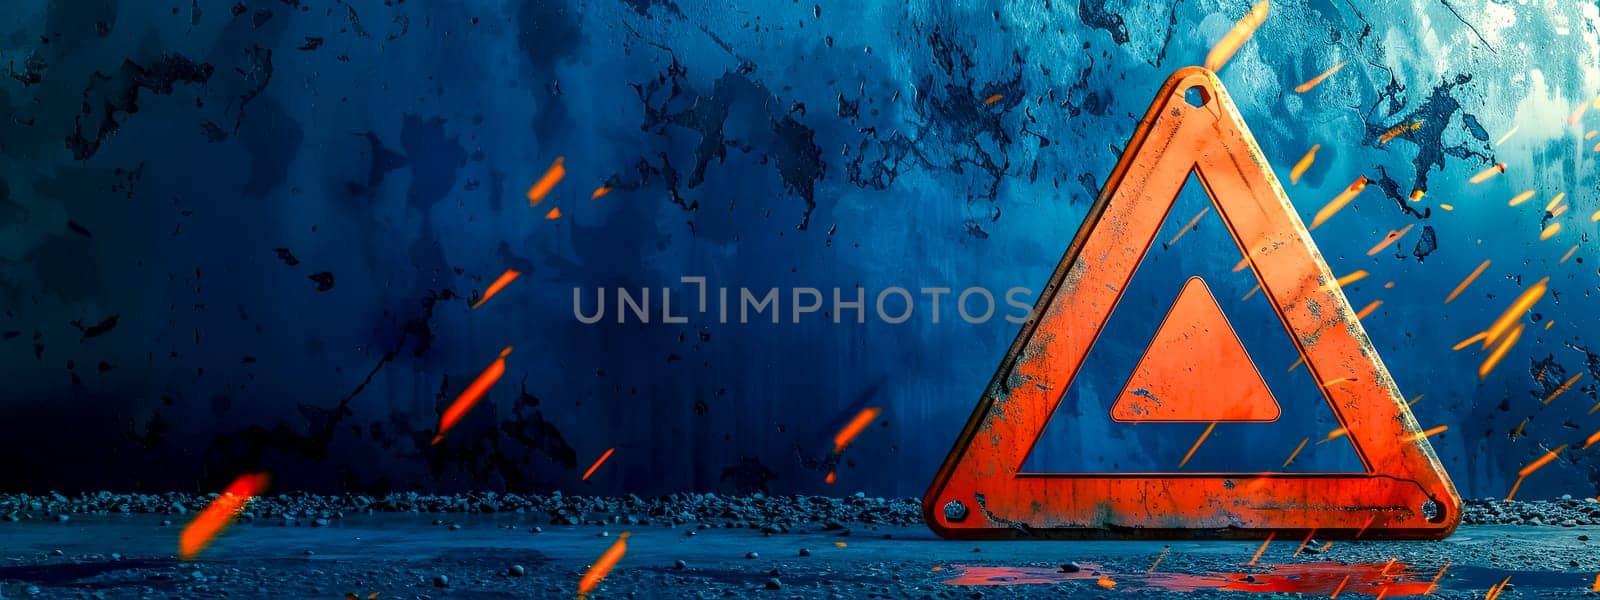 Hazard Warning Triangle on Blue and Orange Dynamic Background by Edophoto